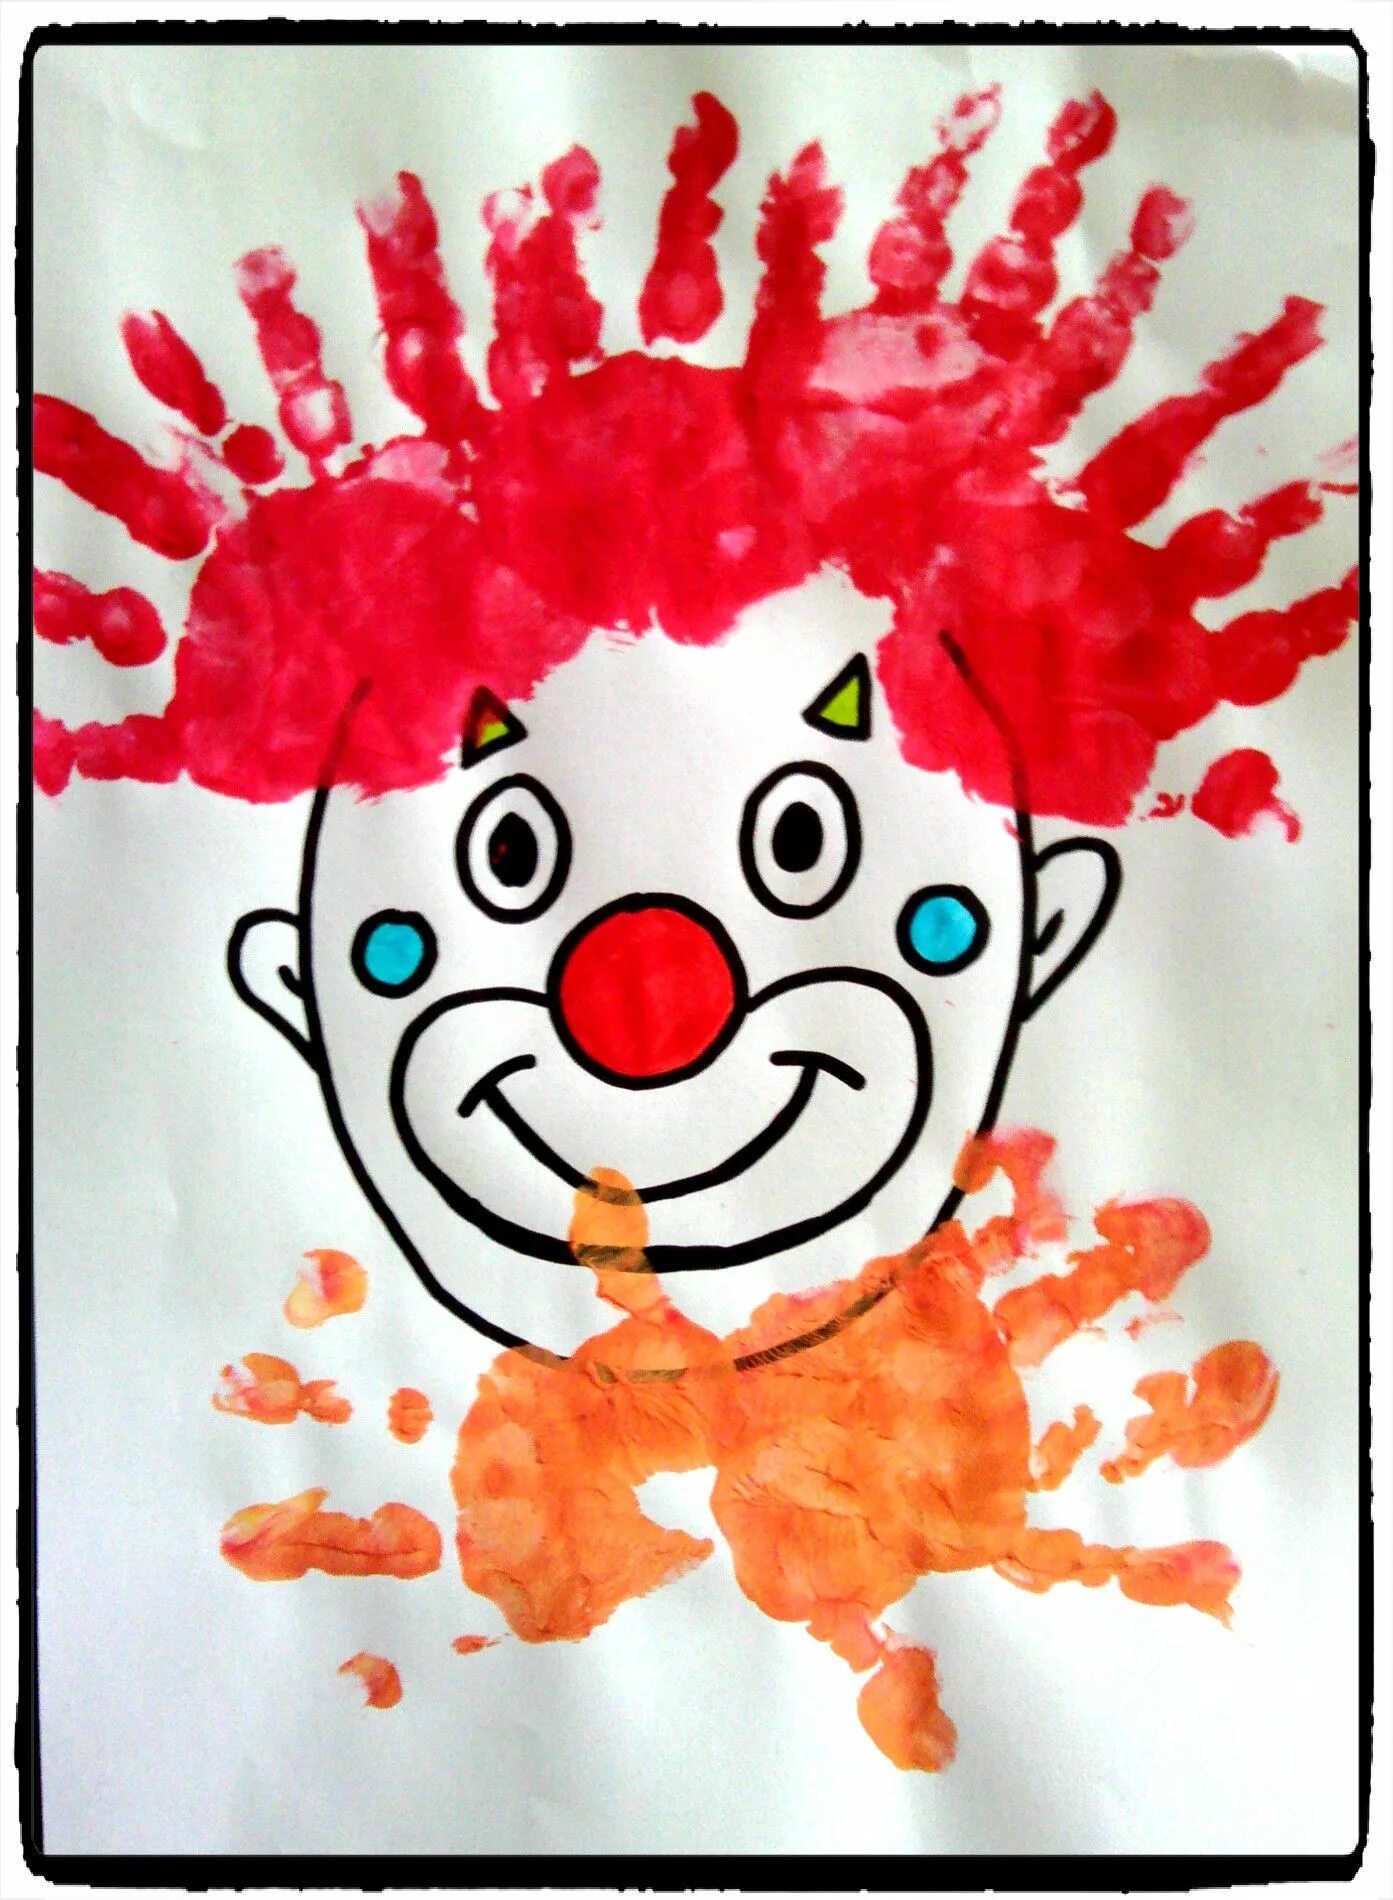 Клоун поделка для детей. Поделка клоун. Поделка клоун для детей. Поддлека клоун. Поделка клоун для детей 5-6 лет.